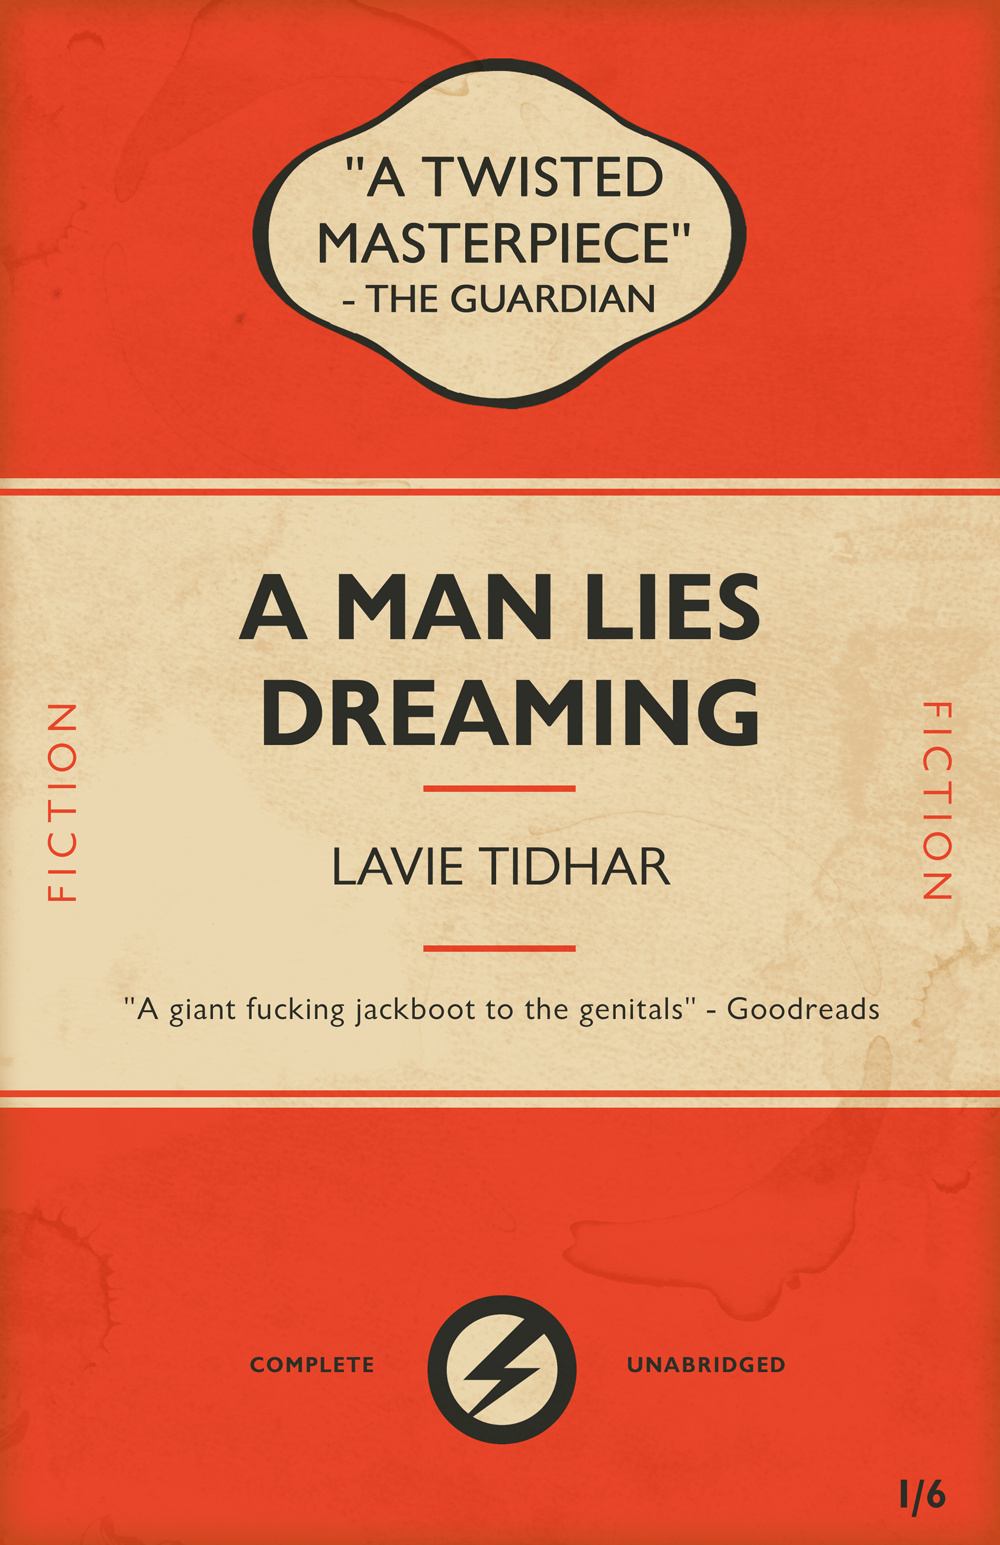 Award Winning Novel by Lavie Tidhar